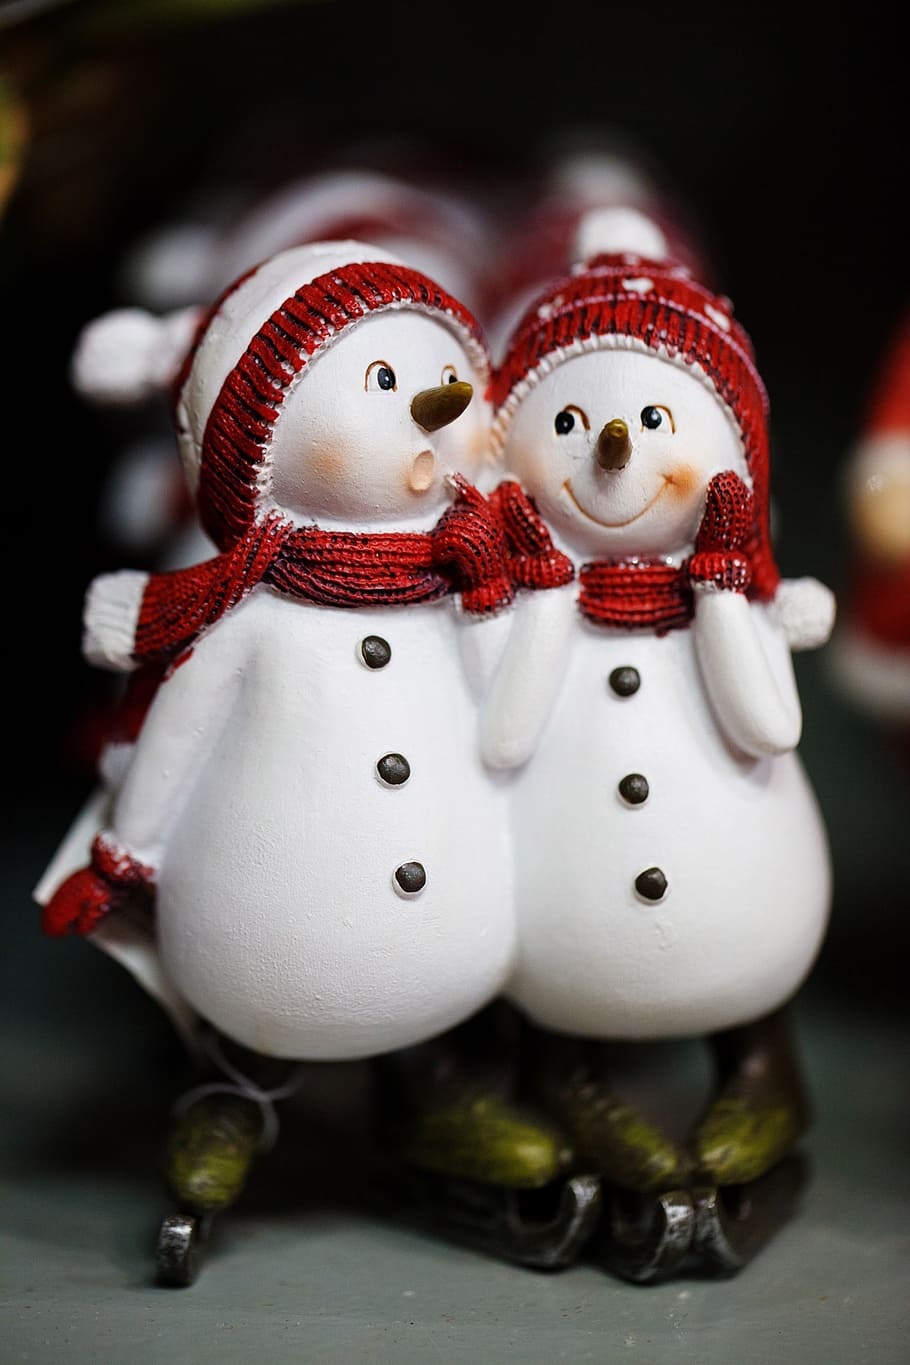 selectiva, fotografía, pareja de muñeco de nieve, muñecos de nieve, celebración, navidad, frío, pareja, lindo, decoración